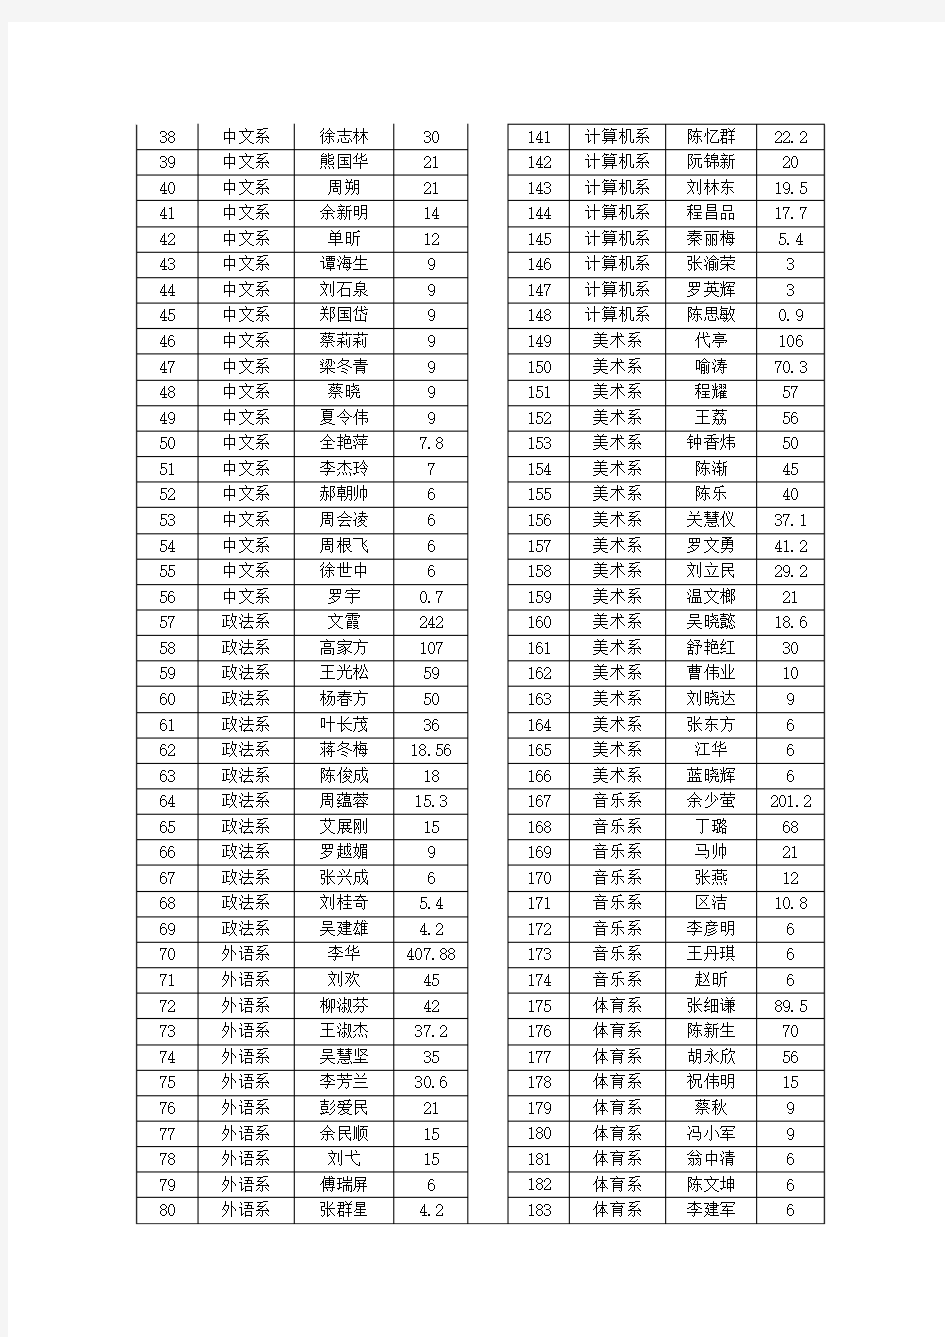 2013年广东第二师范学院科研积分公示表